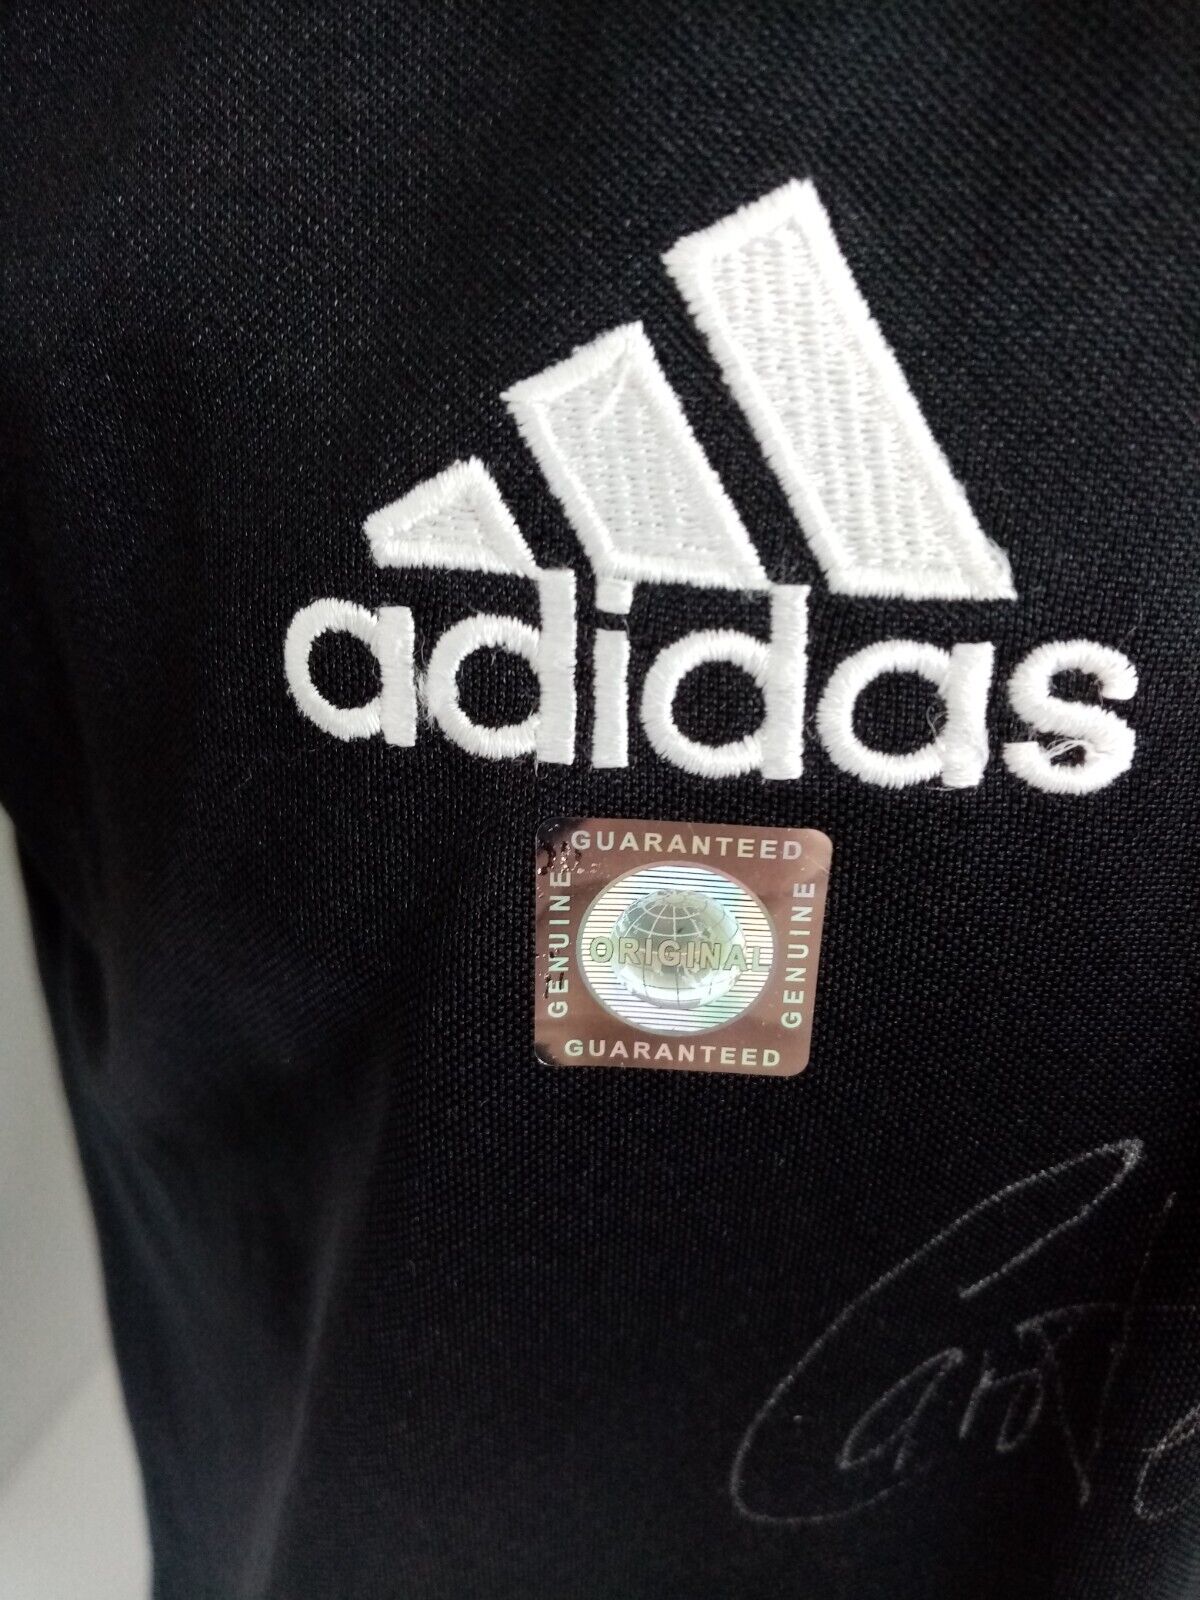 Deutschland Trikot Carsten Ramelow signiert DFB Adidas Autogramm Unterschrift S